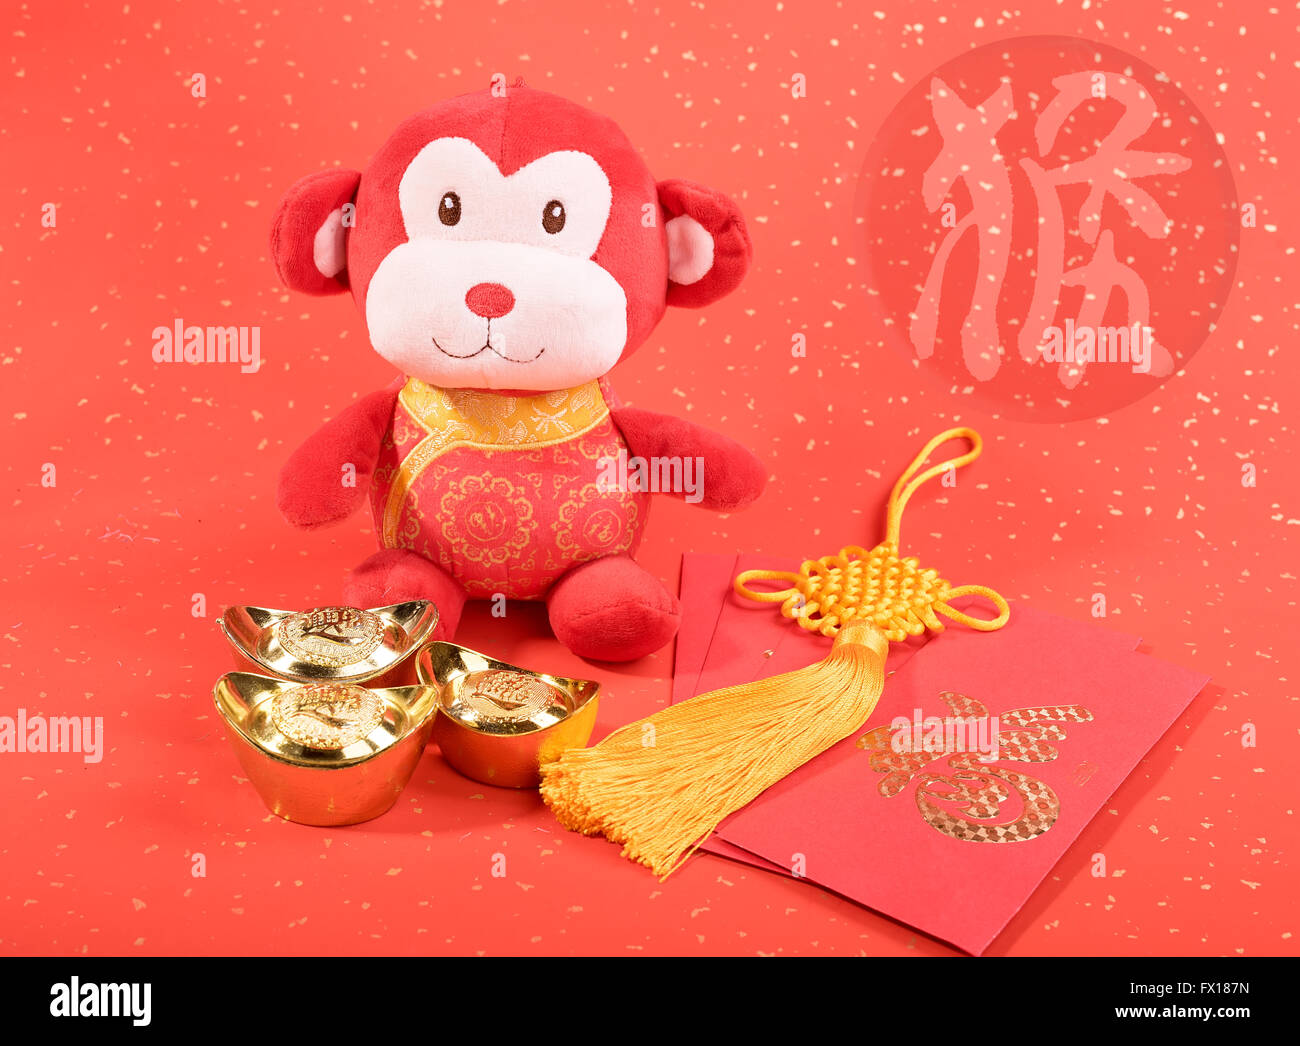 Chinesisches Neujahrsfest Ornamente Spielzeug Affen auf festlichen Hintergrund Stockfoto